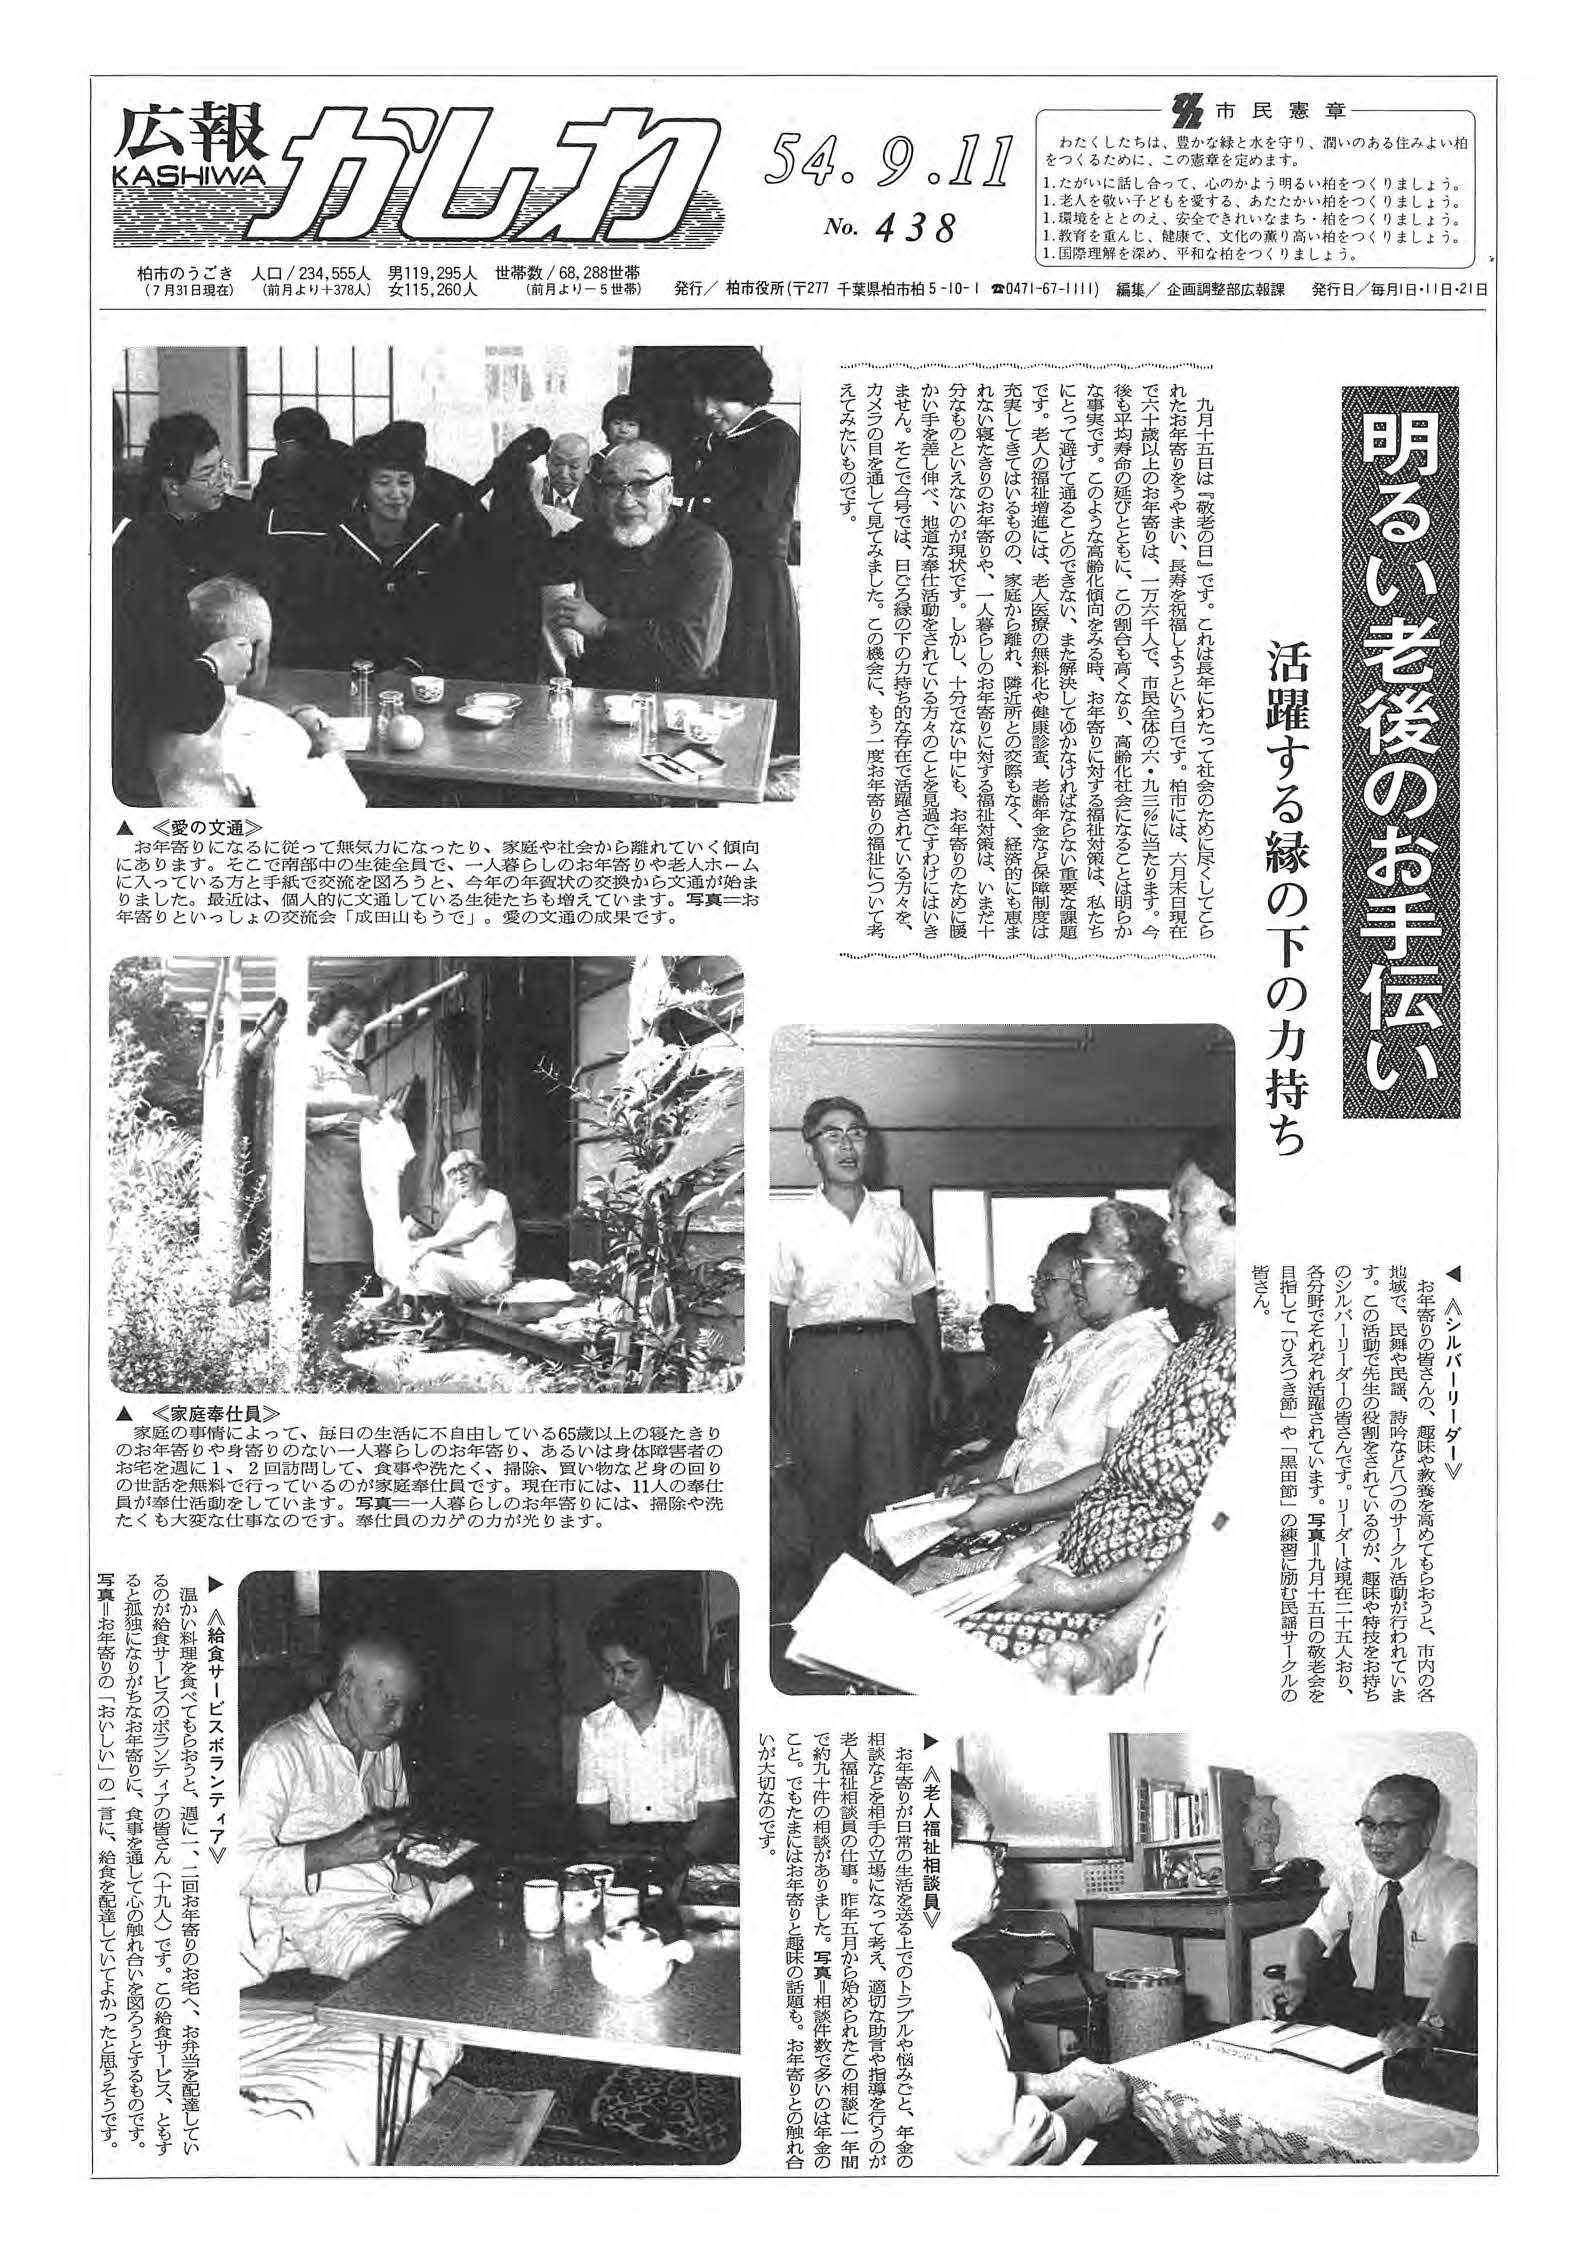 広報かしわ　昭和54年9月11日発行　438号